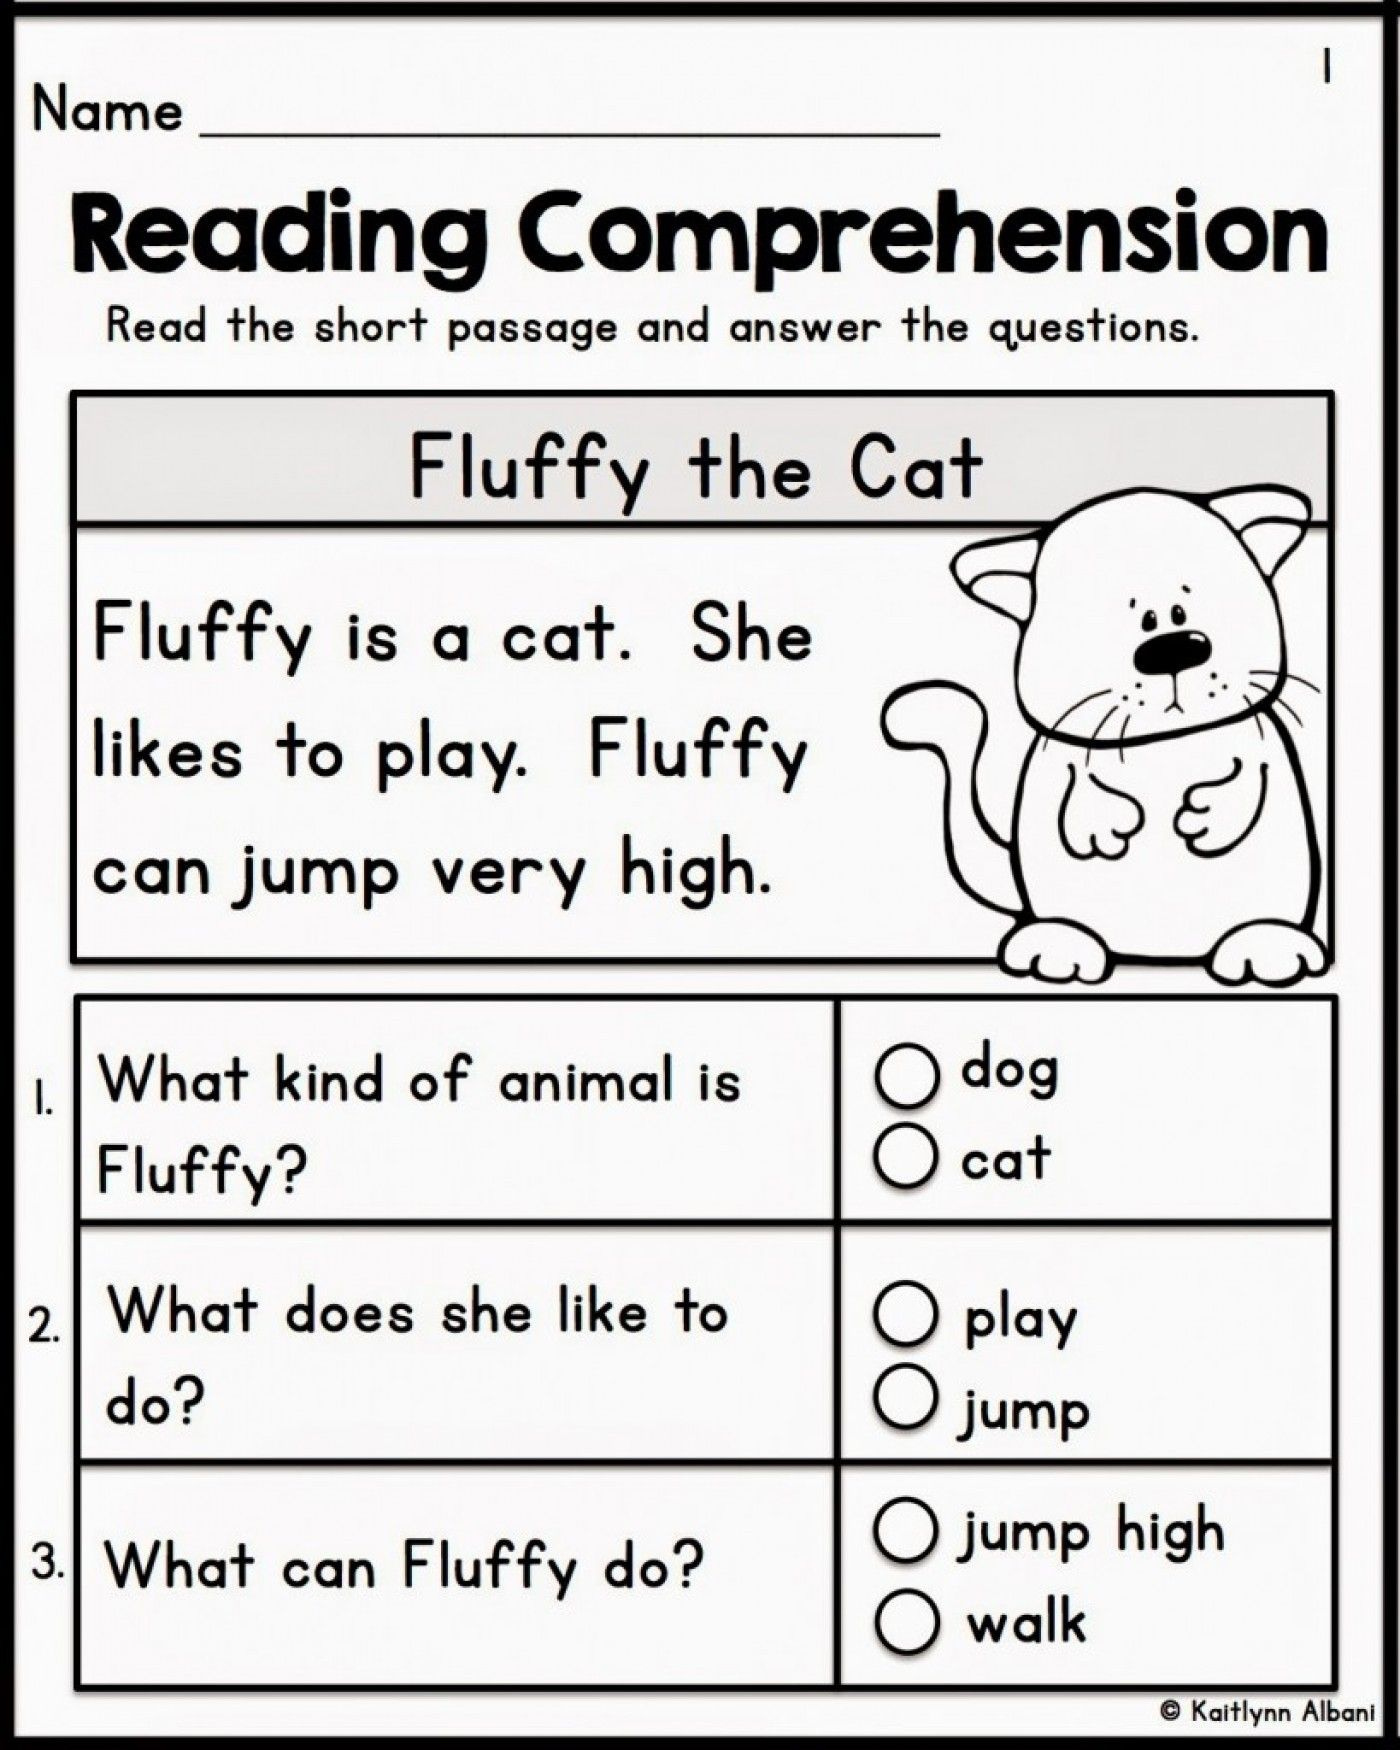 free-reading-comprehension-worksheets-k-12-reading-comprehension